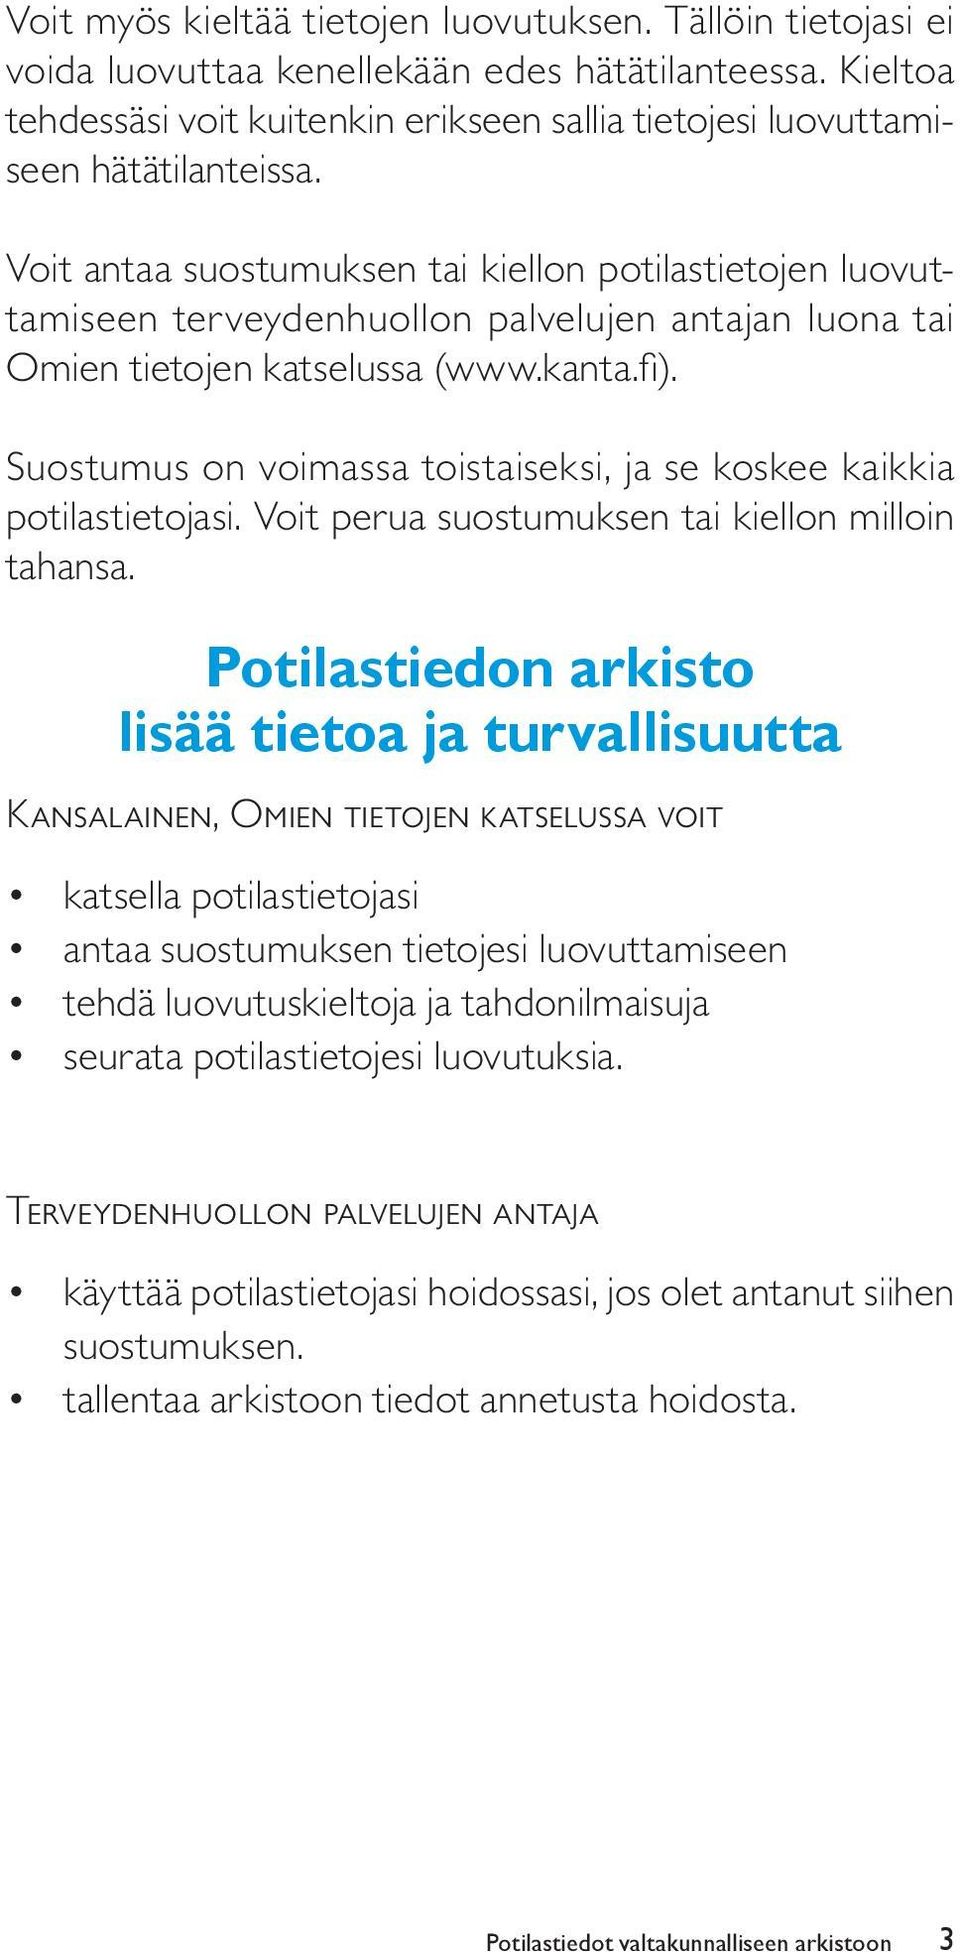 Voit antaa suostumuksen tai kiellon potilastietojen luovuttamiseen terveydenhuollon palvelujen antajan luona tai Omien tietojen katselussa (www.kanta.fi).